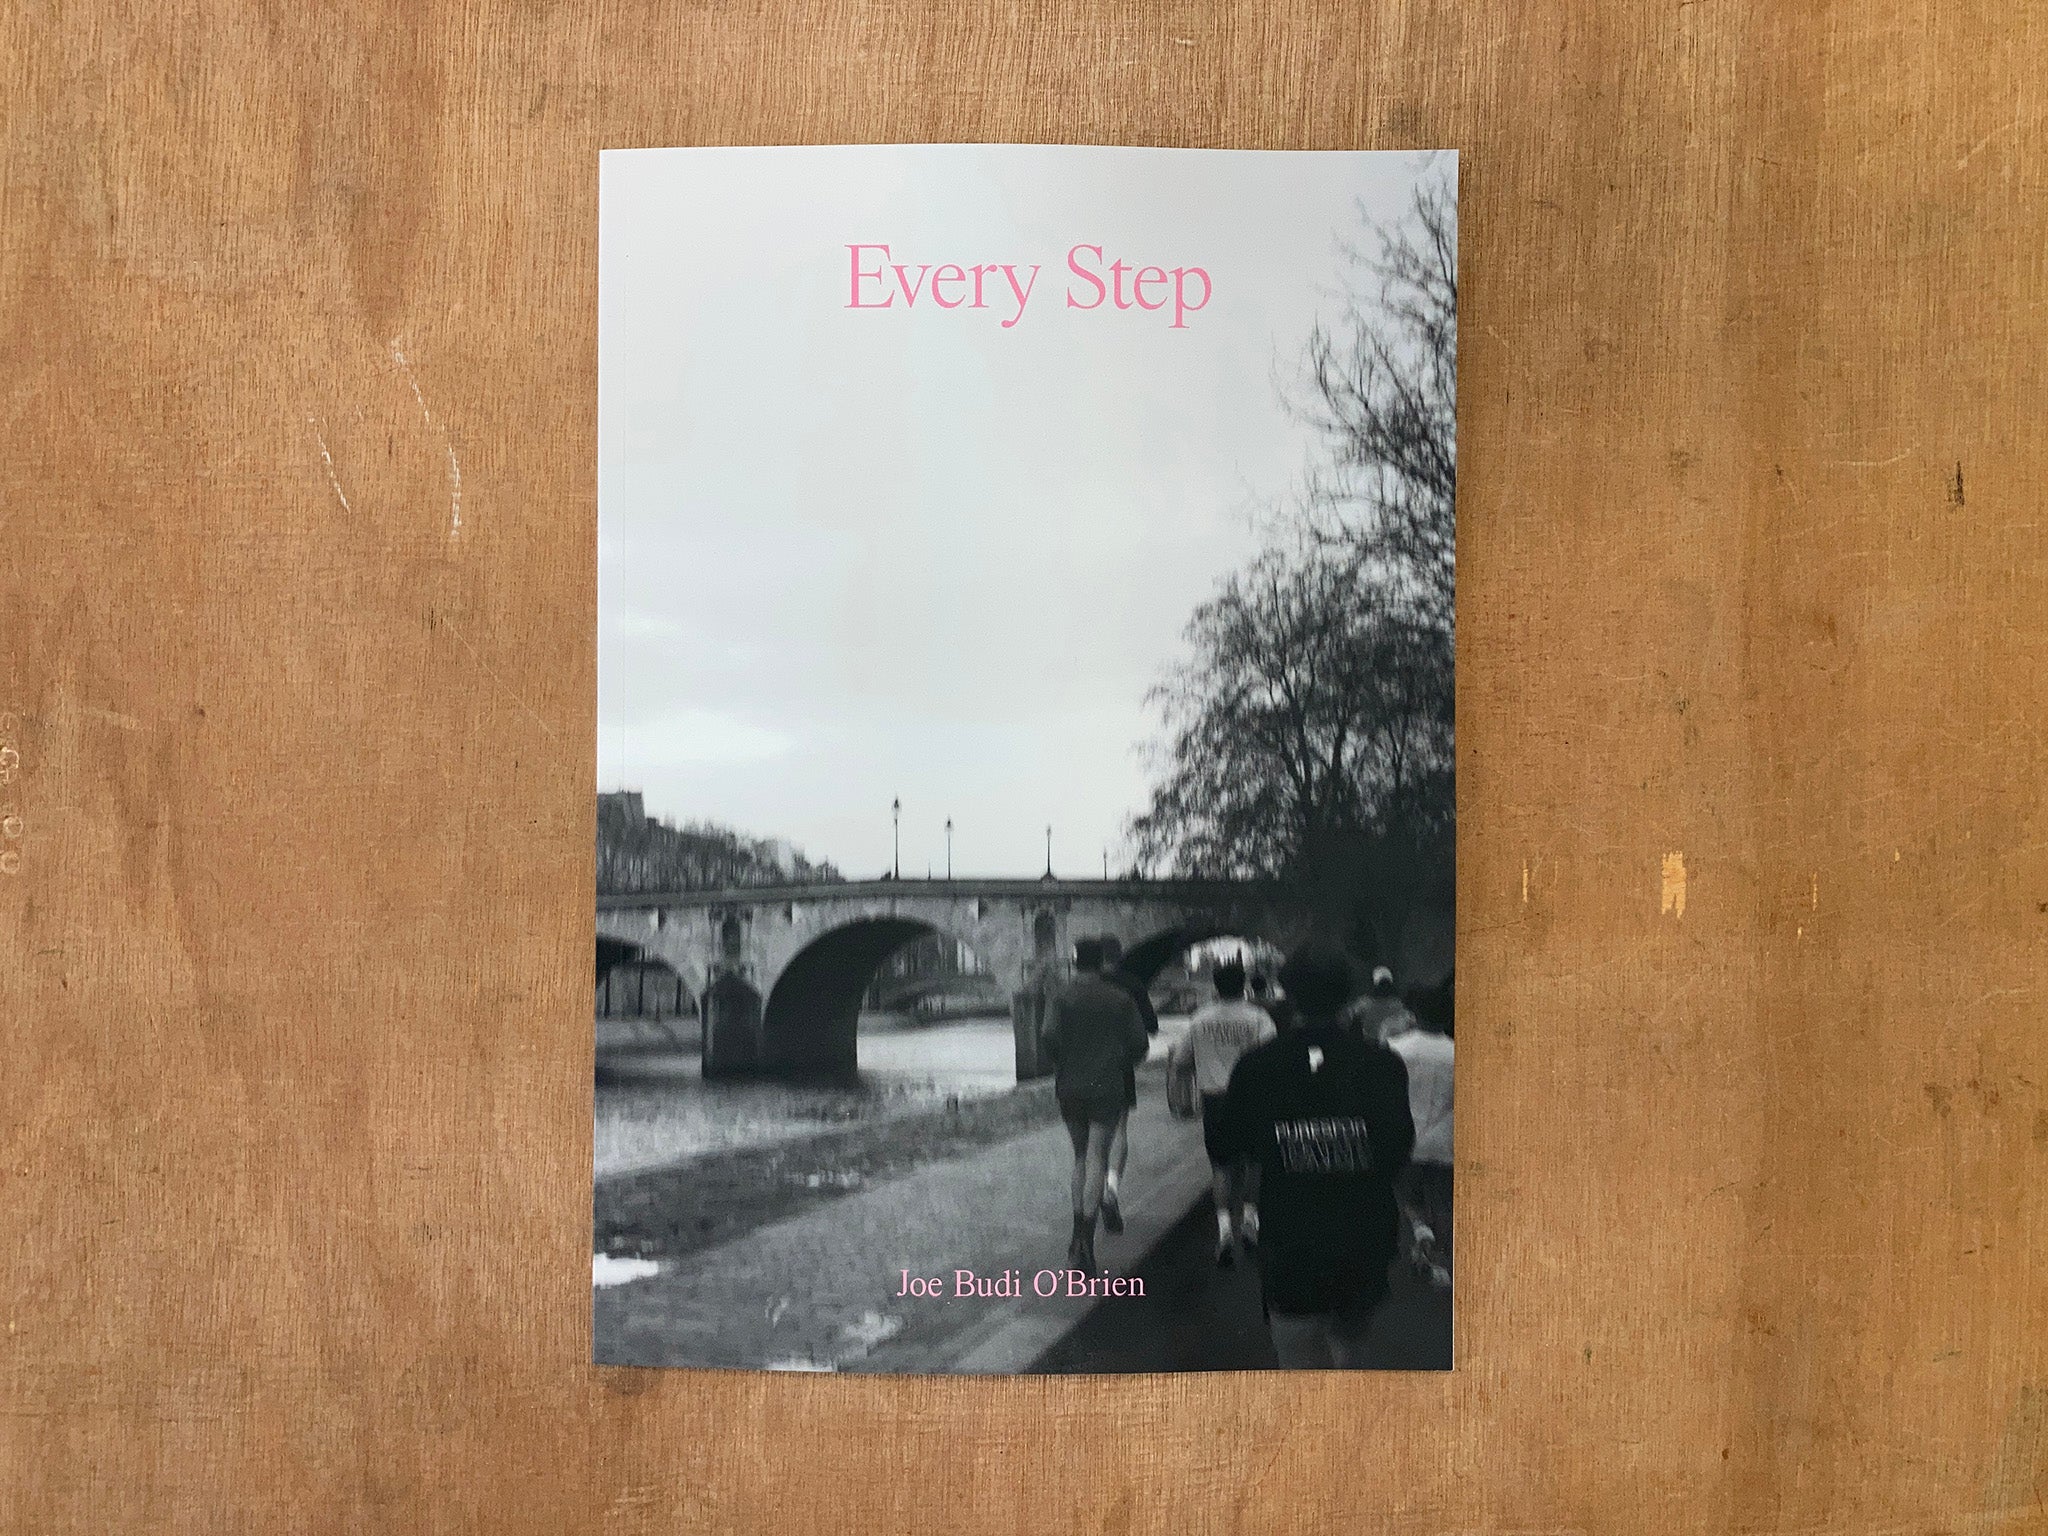 EVERY STEP by Joe Budi O'Brien